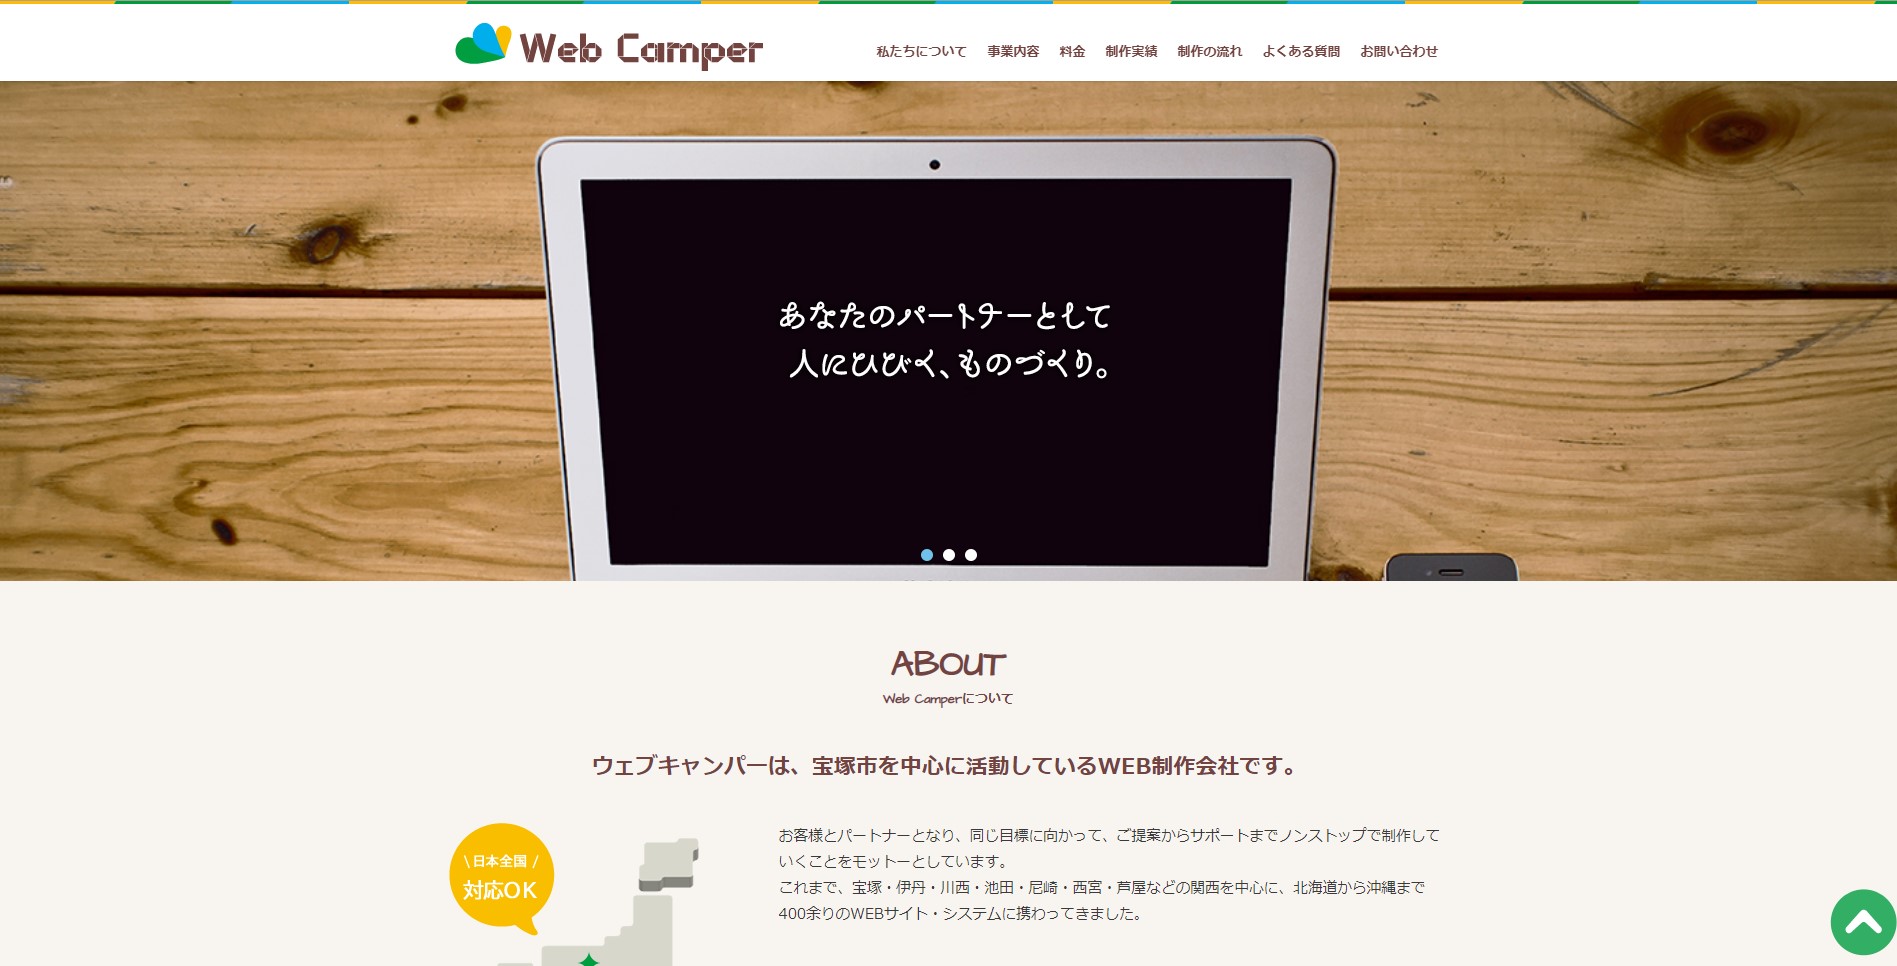 WebCamper